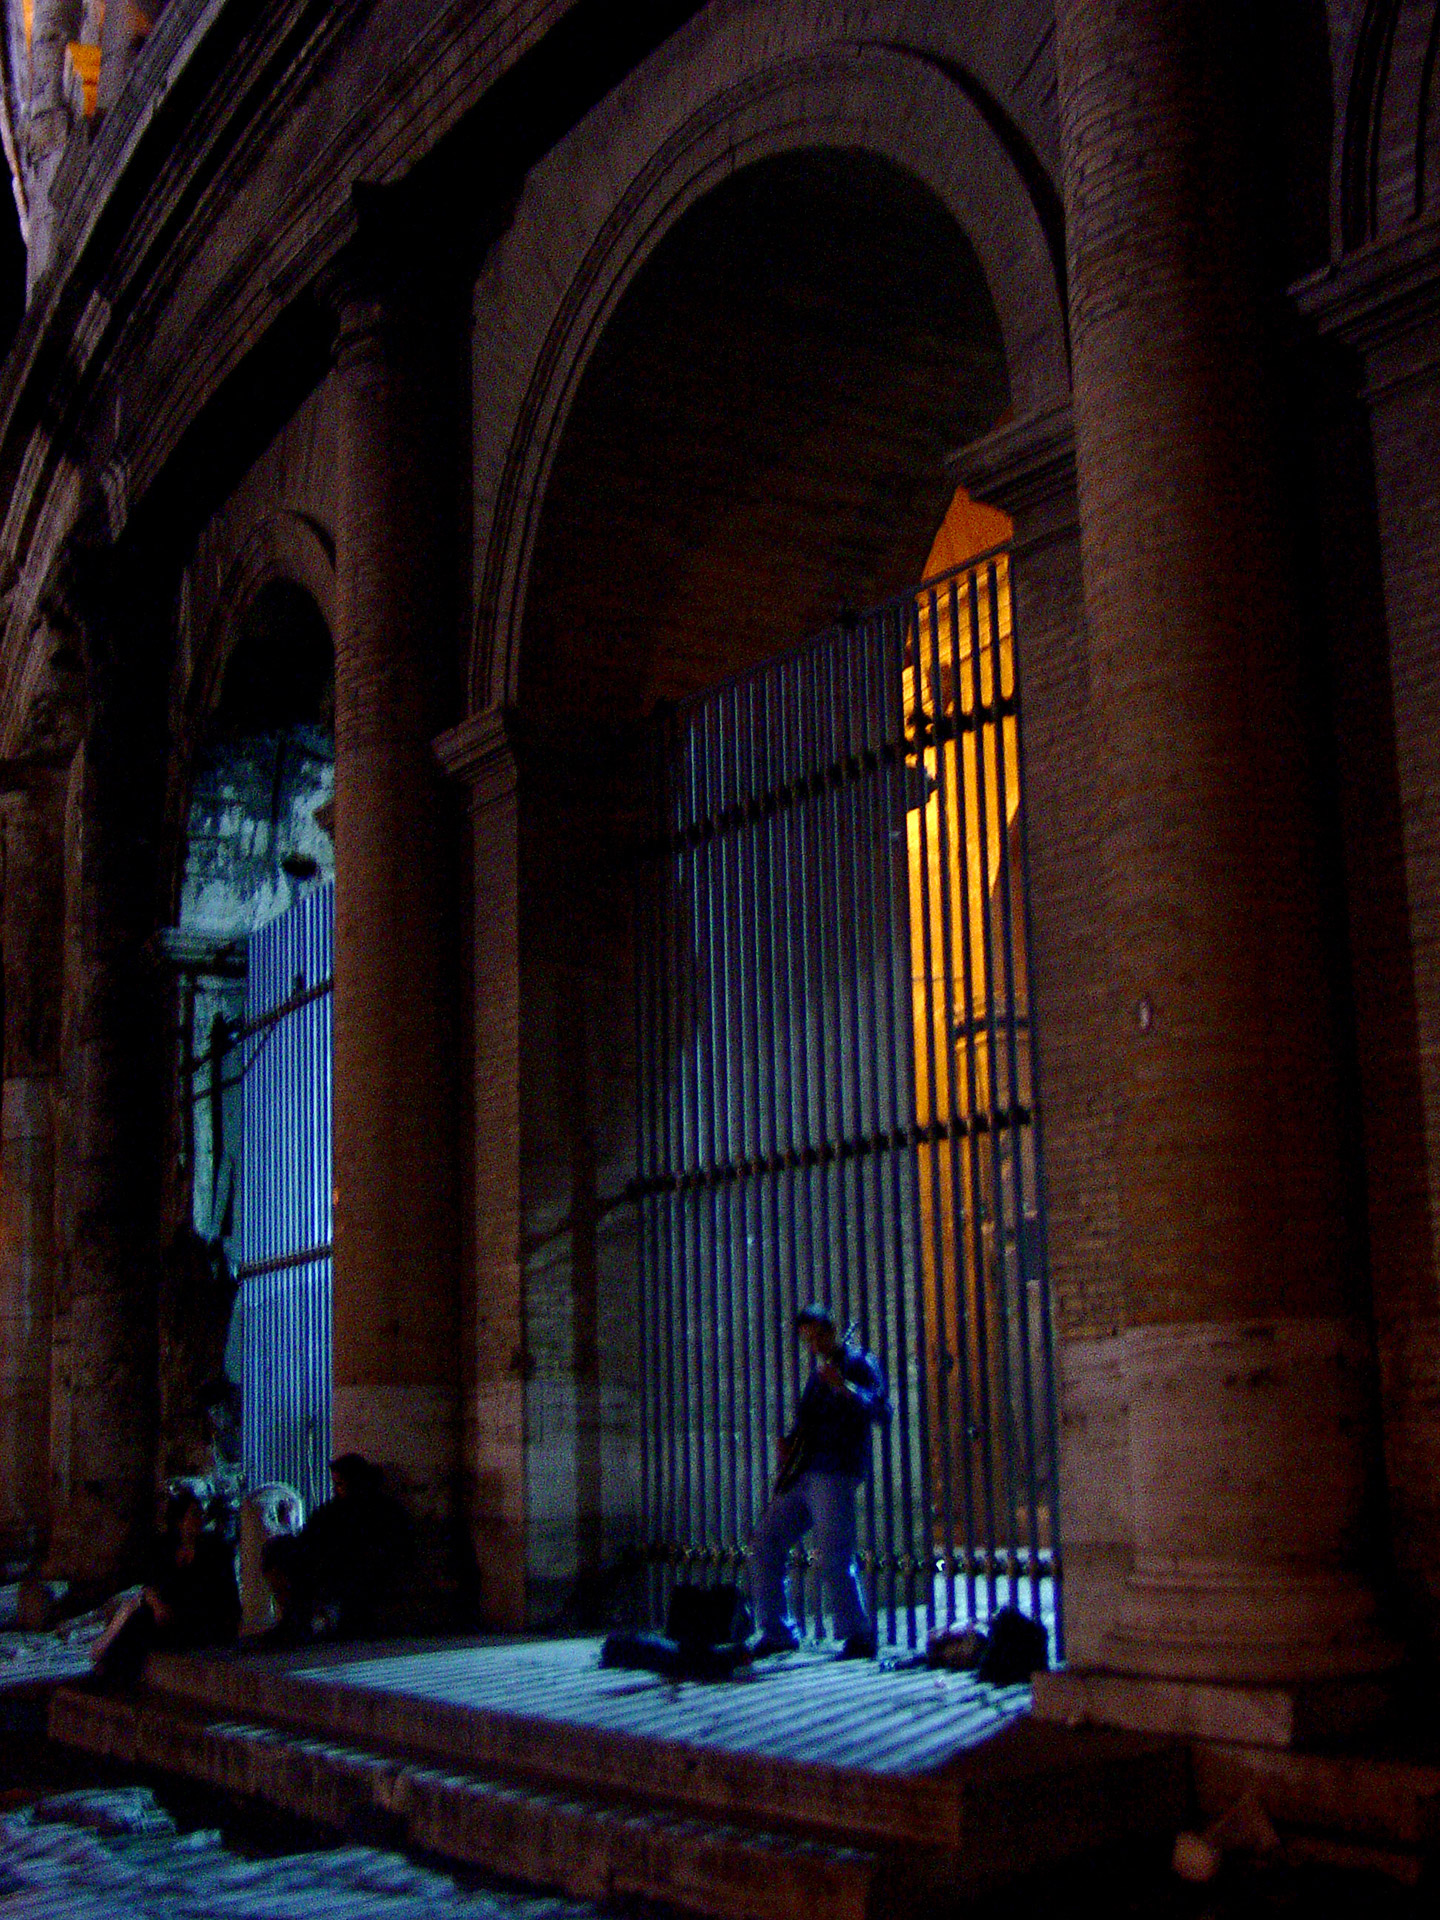 Rzym, Colloseum night, Rzym nocą, nocne życie w Rzymie, podróże, podróże po Europie, fotografia Monika Turska